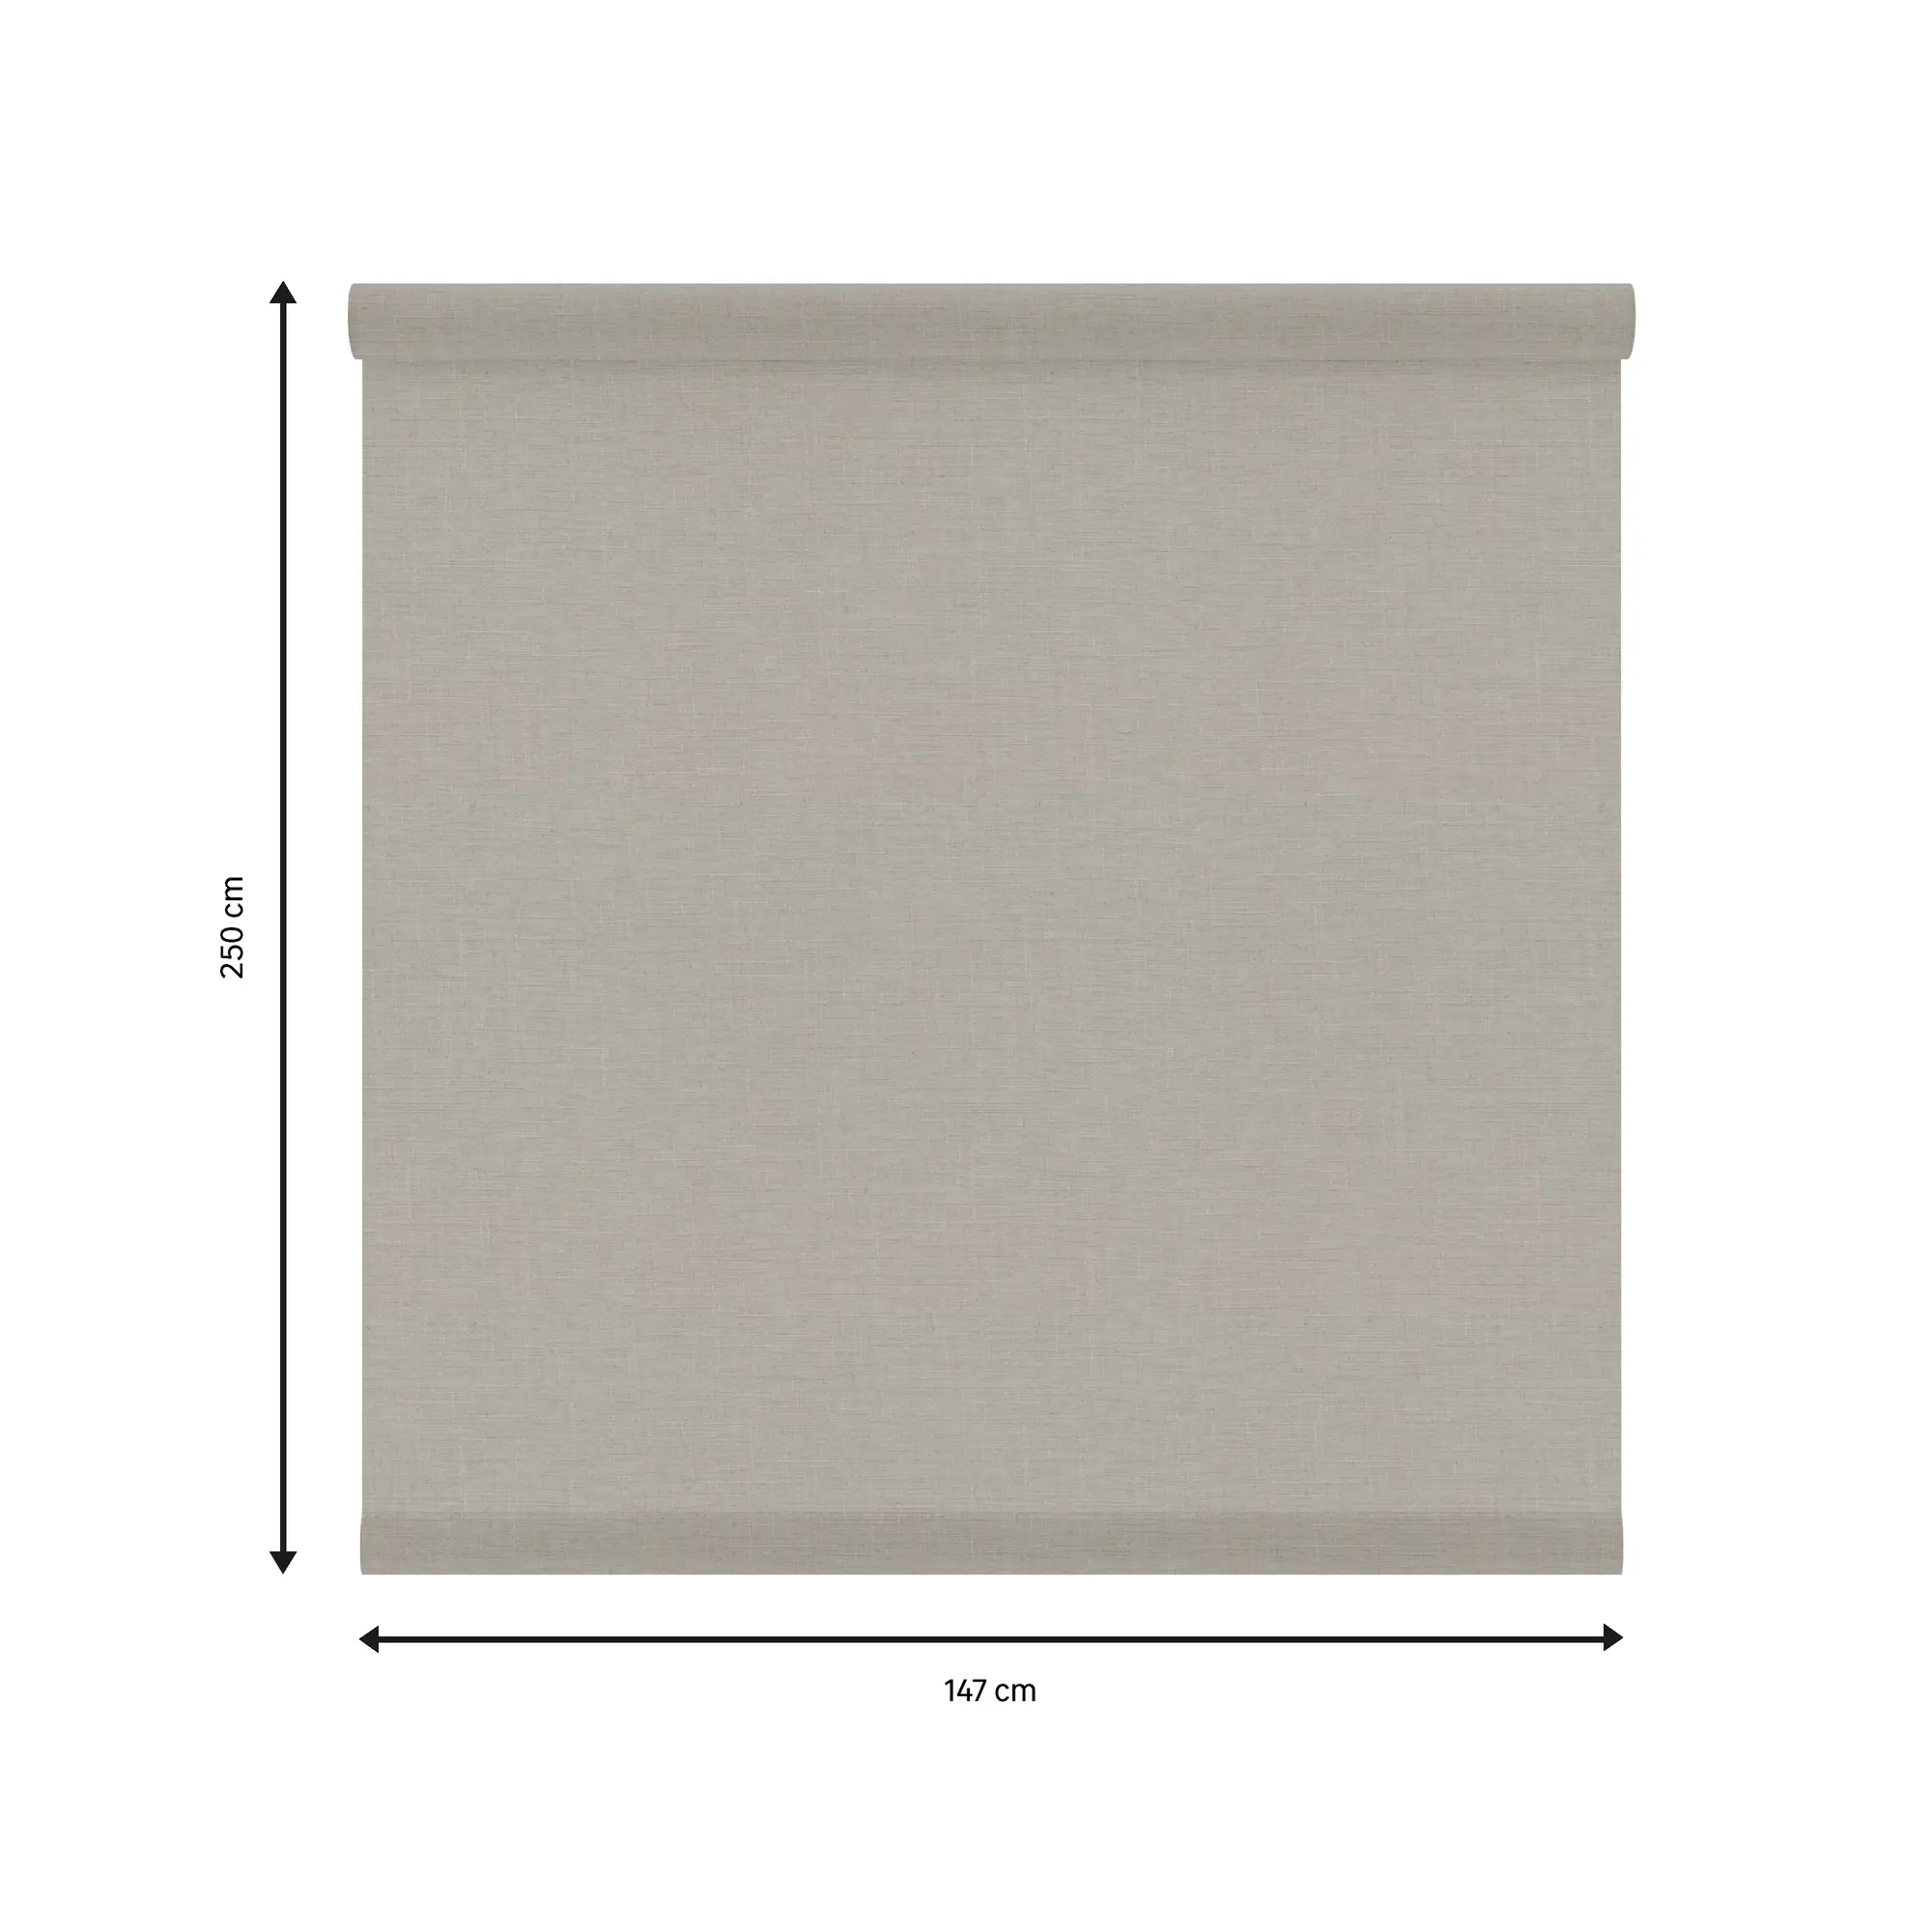 Tessuto per tende a rullo filtrante INSPIRE Brisbane beige 147 x 250 cm - 1